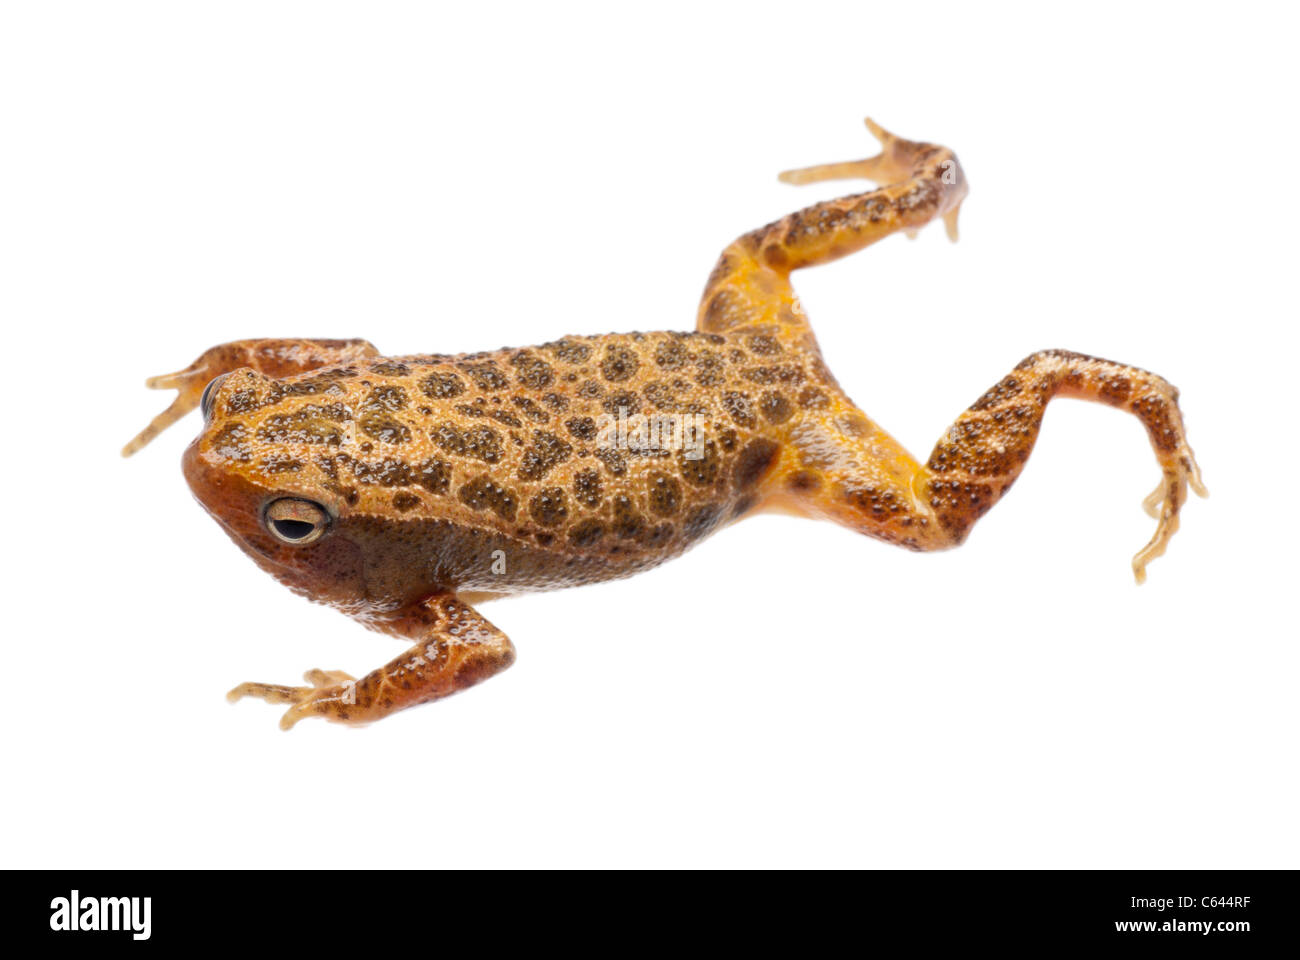 animal amphibian frog isolated on white Stock Photo